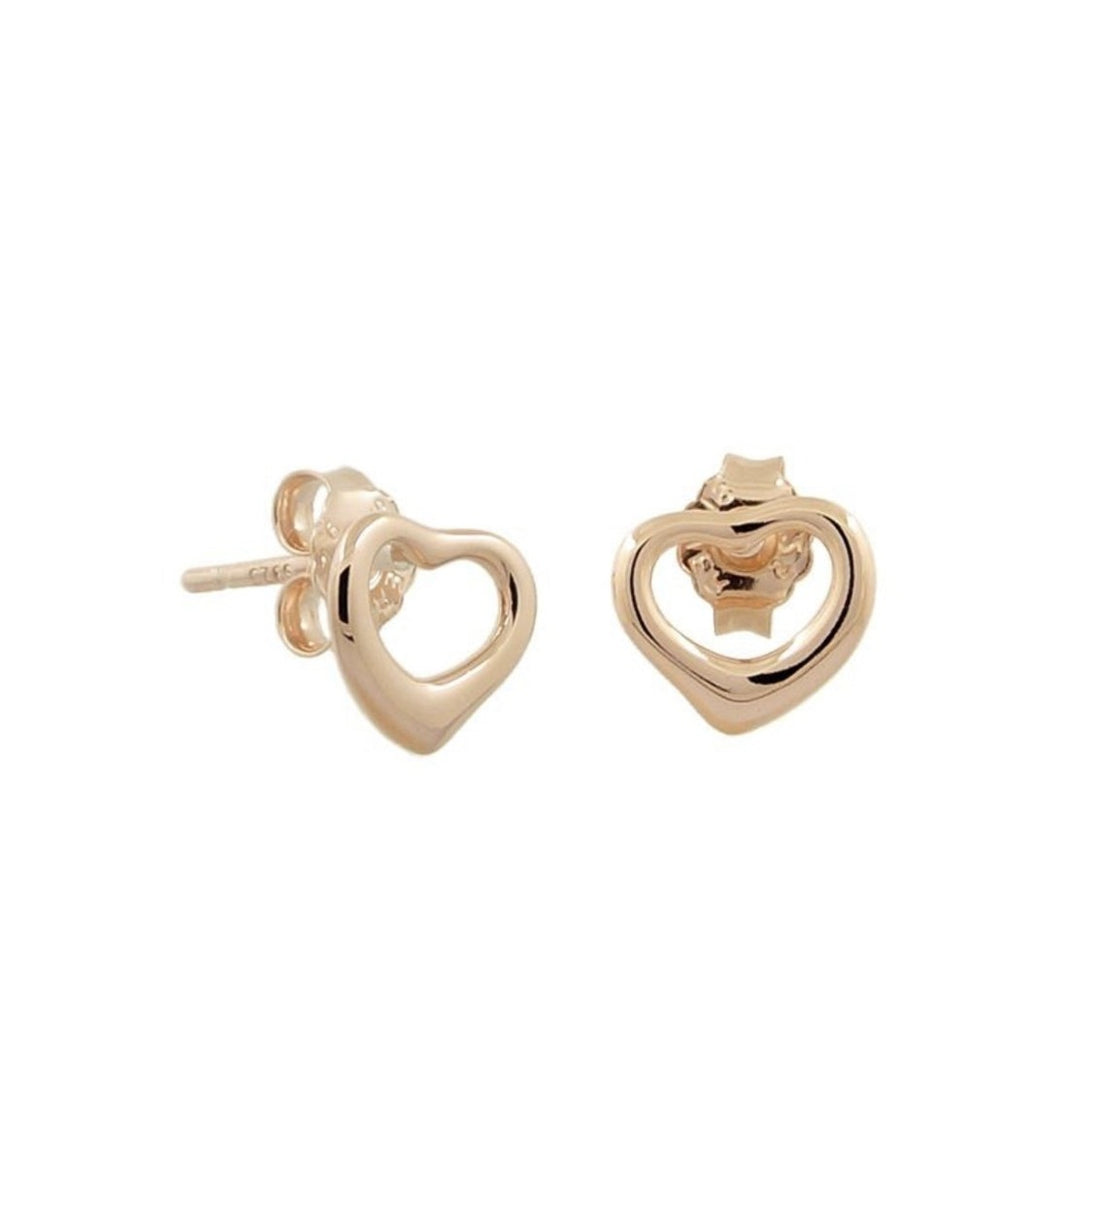 Open heart stylish design of love heart stud earrings in rose gold.